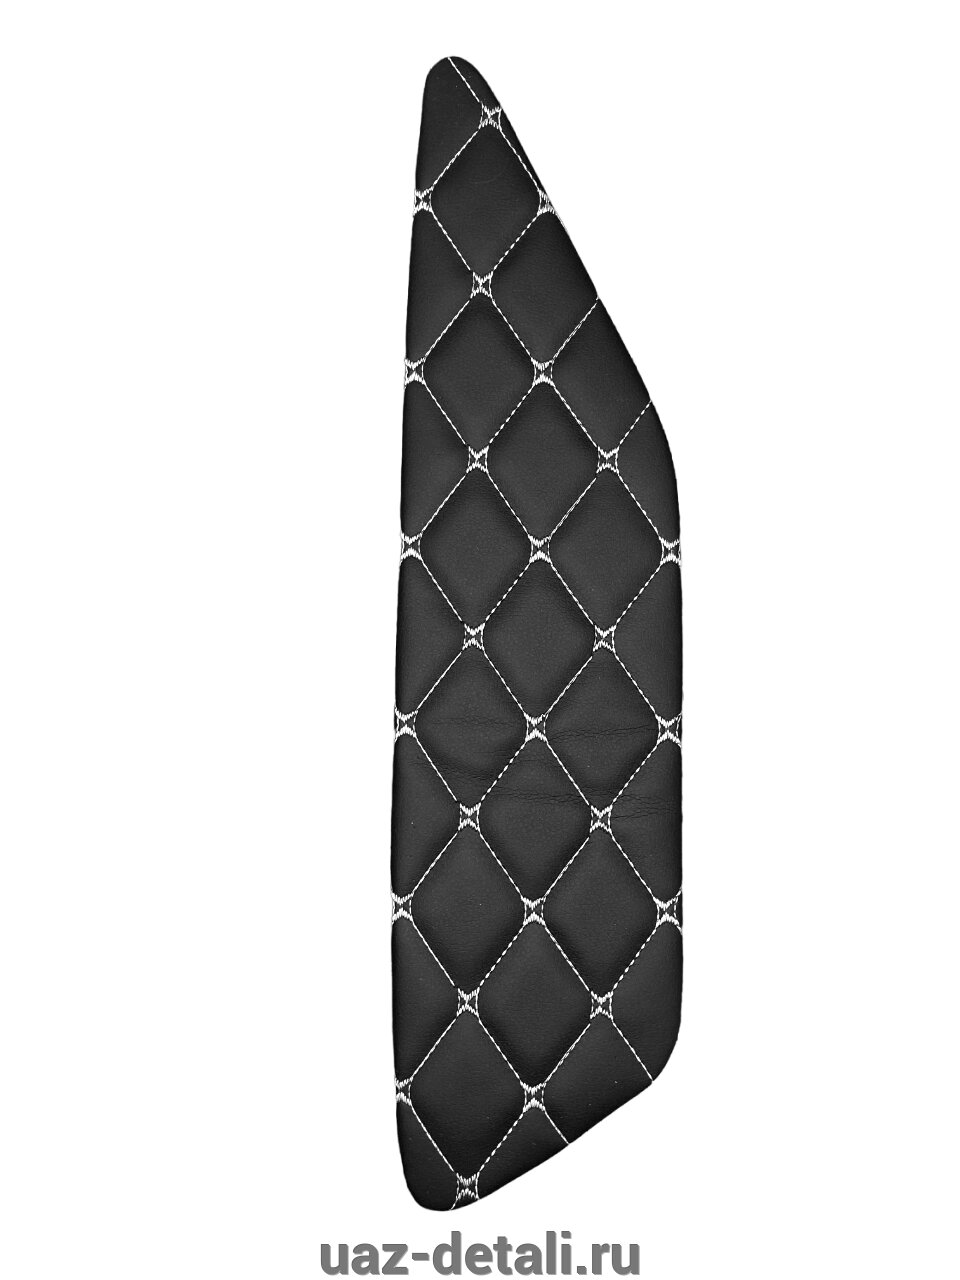 Вставки дверные LADA Granta (Гранта) на ДВП, декоративный черный ромб белая нить 4 шт от компании УАЗ Детали - магазин запчастей и тюнинга на УАЗ - фото 1